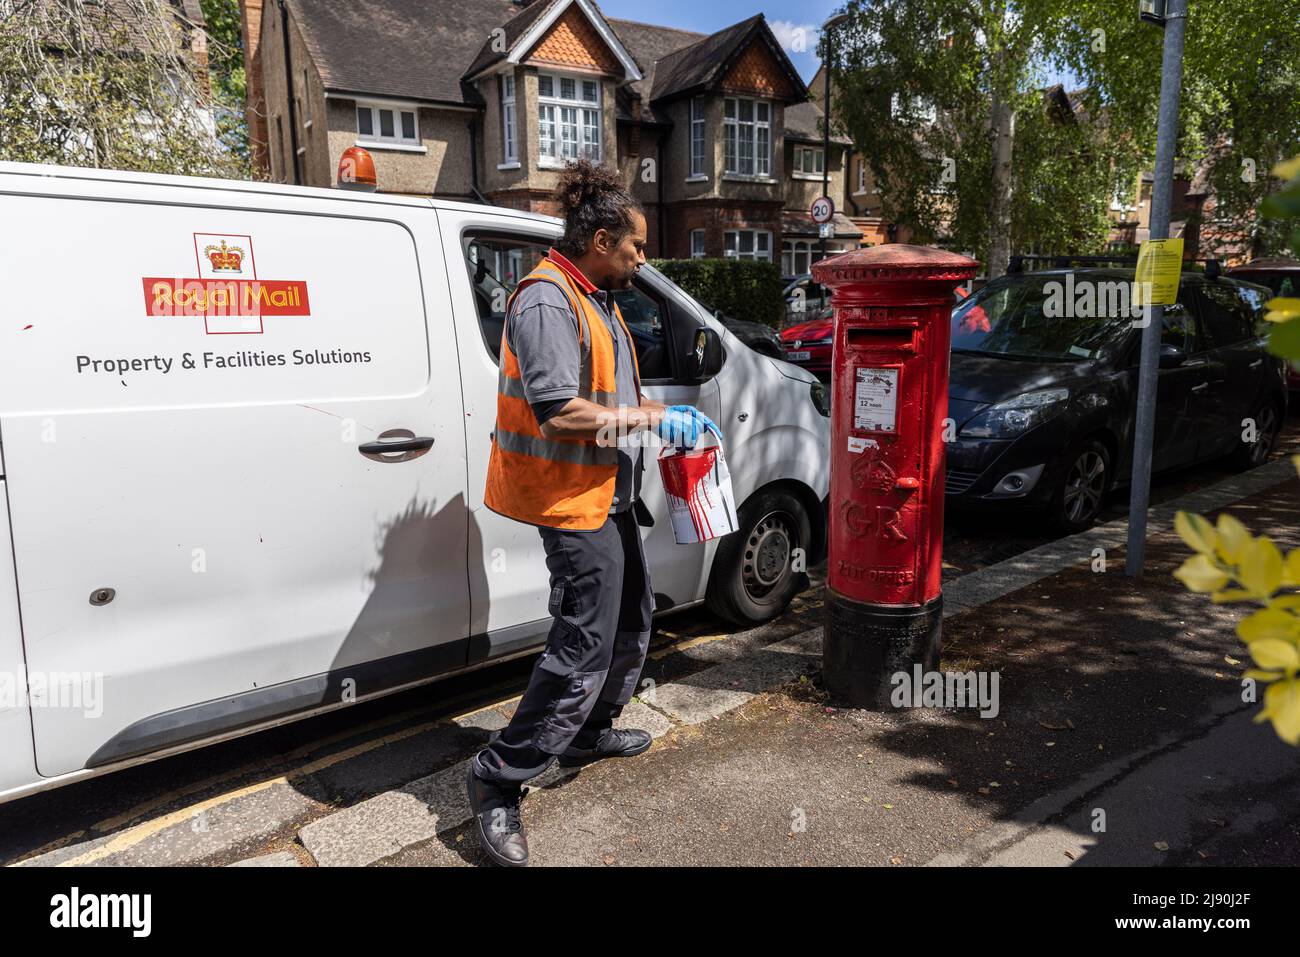 Royal Mail Postarbeiter, der einem Briefkasten einen roten Anstrich gibt, London, England, Großbritannien Stockfoto